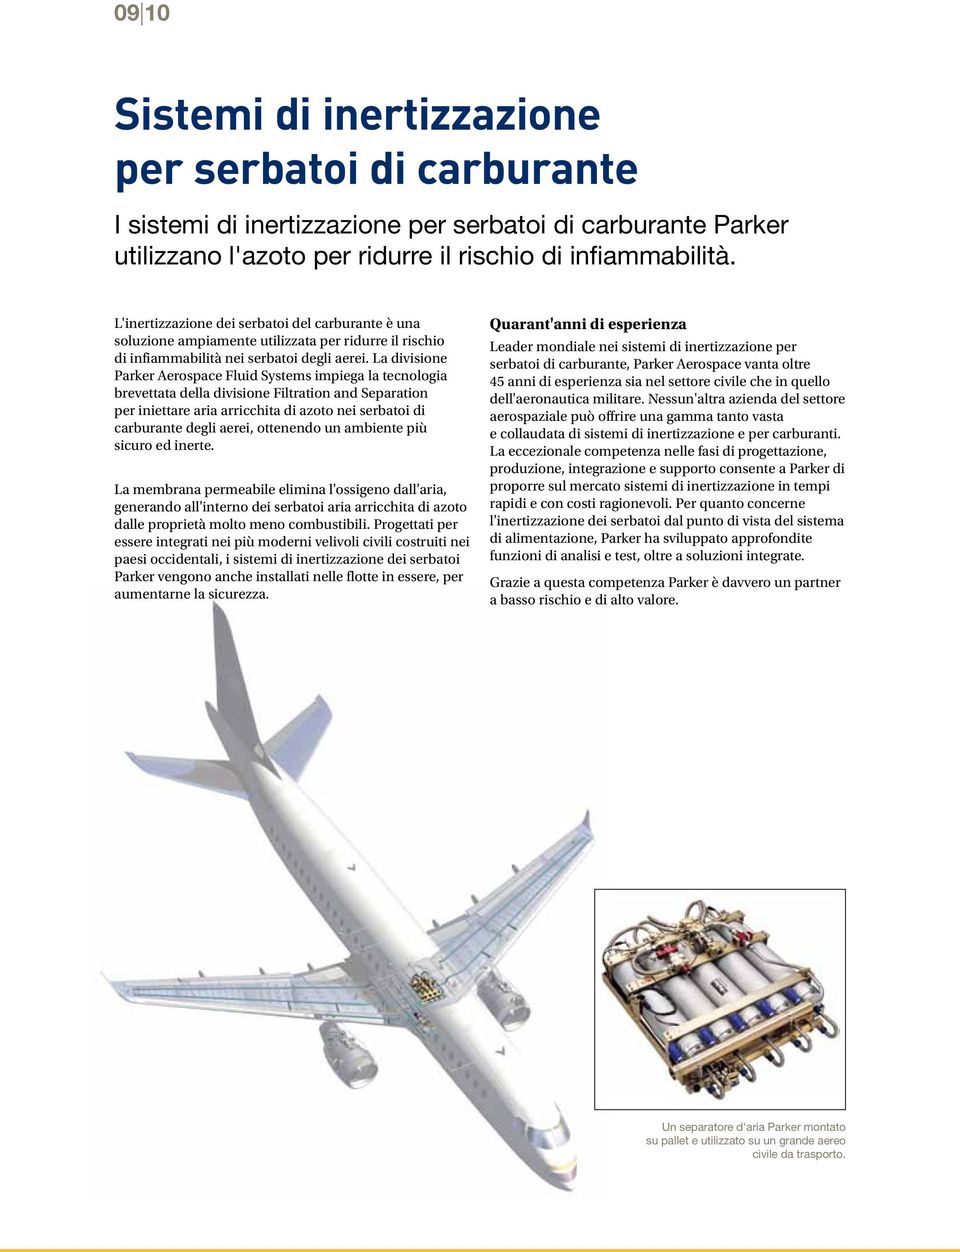 La divisione Parker Aerospace Fluid Systems impiega la tecnologia brevettata della divisione Filtration and Separation per iniettare aria arricchita di azoto nei serbatoi di carburante degli aerei,